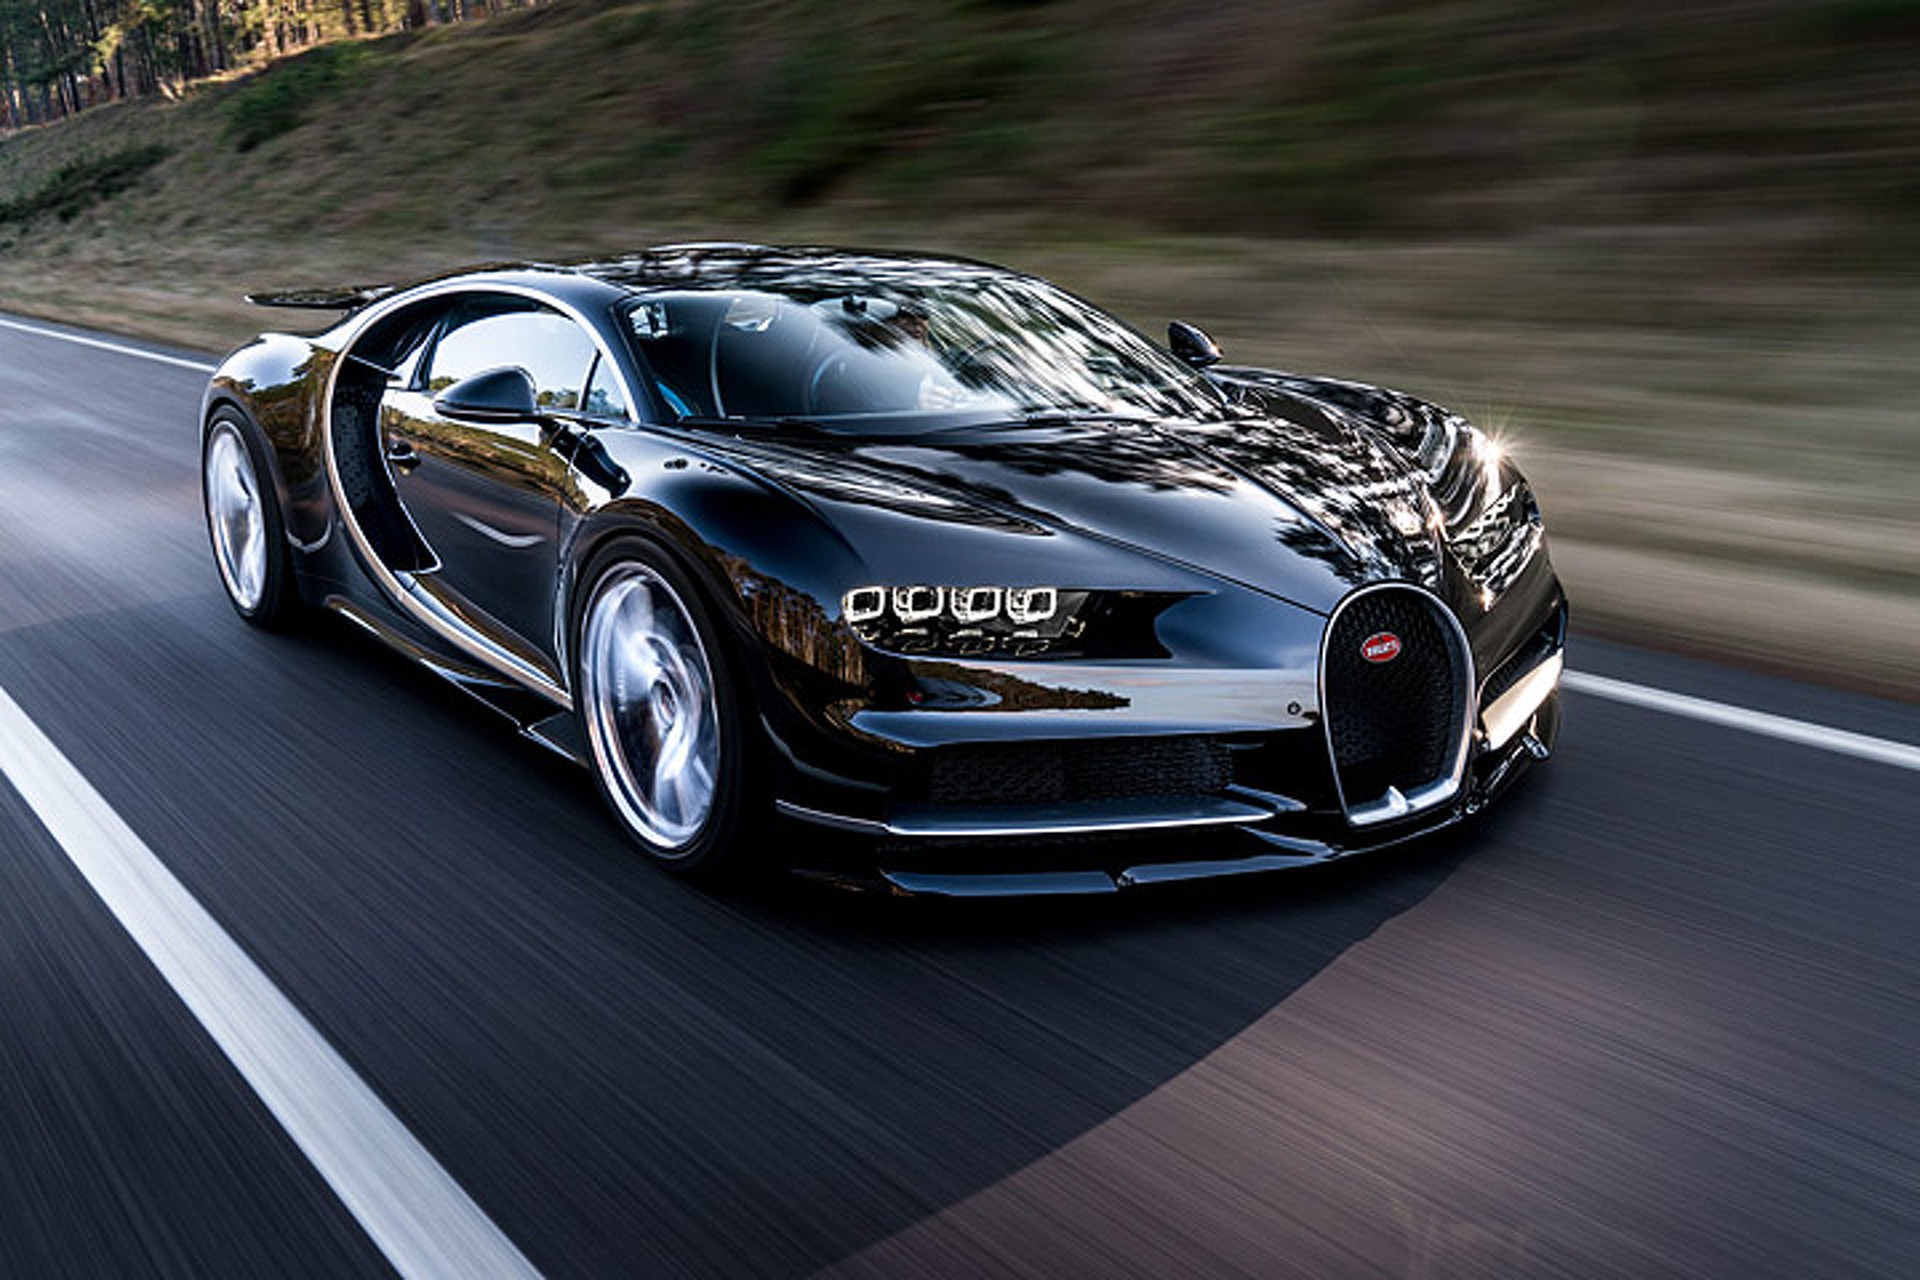 Bugatti xe 4 chỗ mới đang chờ đón bạn trên đường đua. Với thiết kế hầm hố, động cơ mạnh mẽ và tốc độ lên tới 420 km/h, Bugatti sẽ cho bạn trải nghiệm tuyệt vời nhất trên đường đua. Hãy xem hình ảnh để cảm nhận sức mạnh của chiếc xe này.